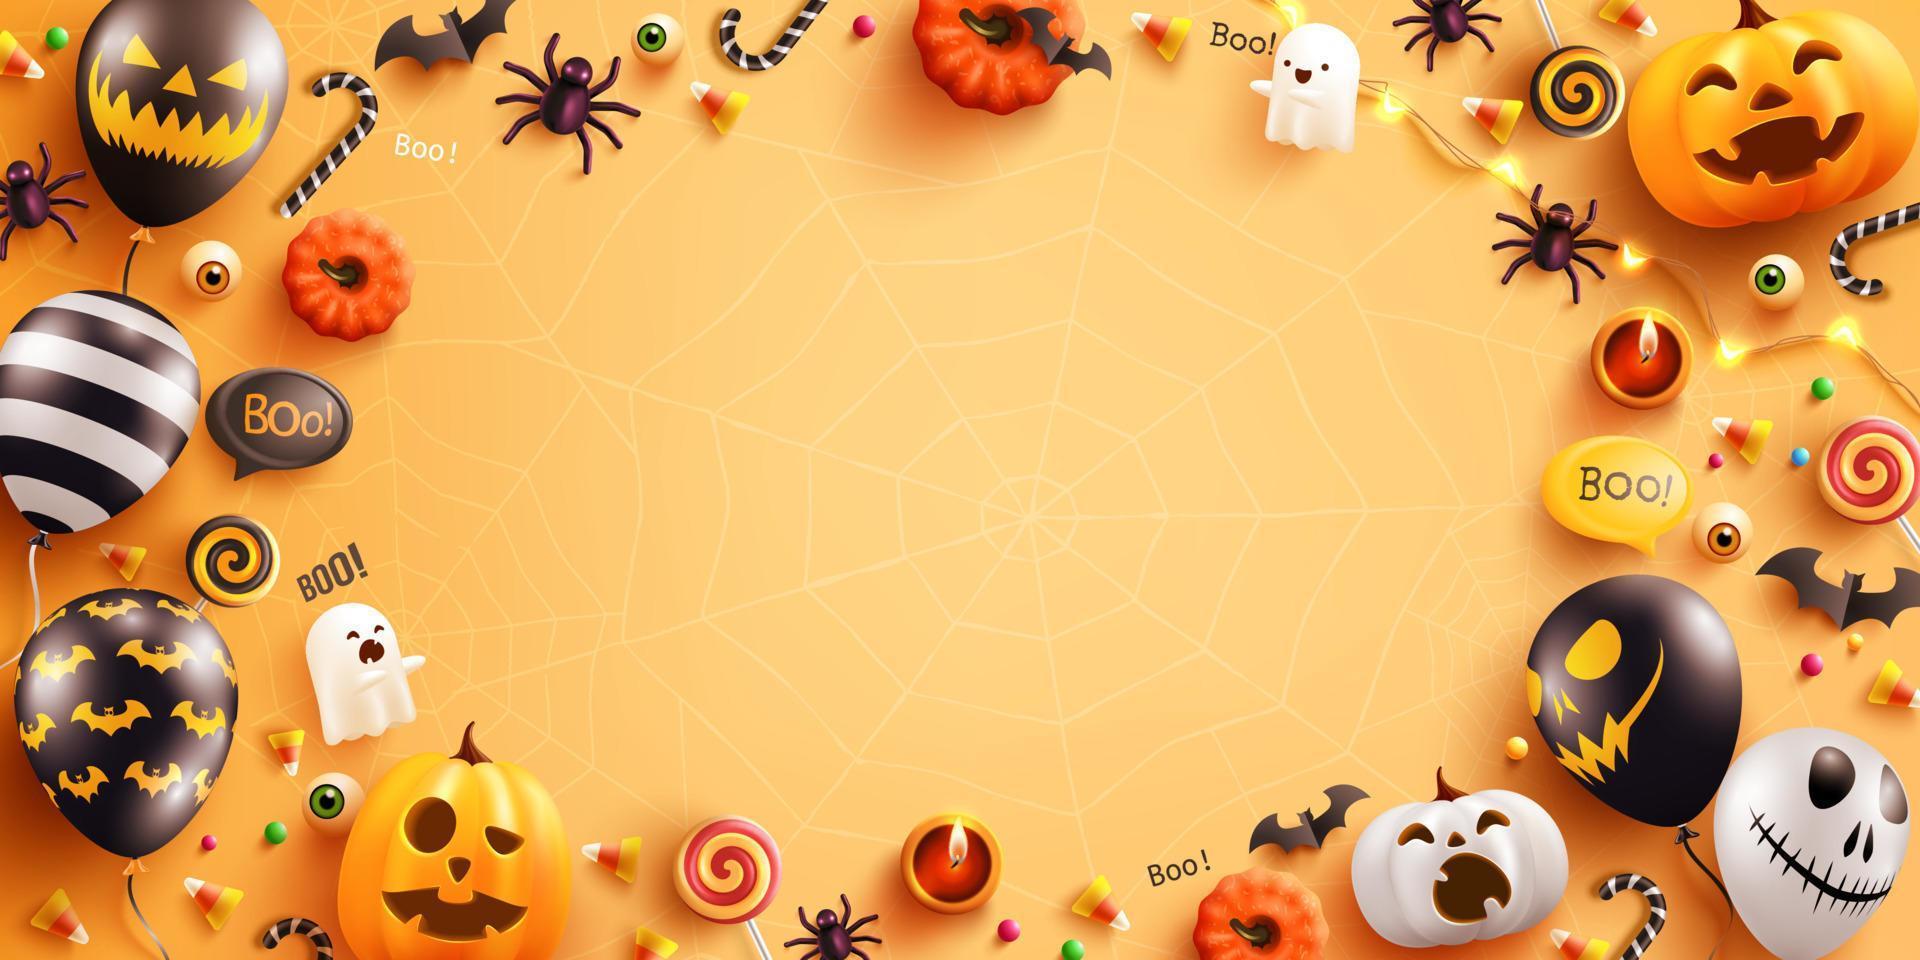 arrière-plan pour halloween avec ballons fantômes d'halloween et citrouille. ballons à air effrayants, chauve-souris, bonbons et éléments d'halloween sur fond jaune. vecteur